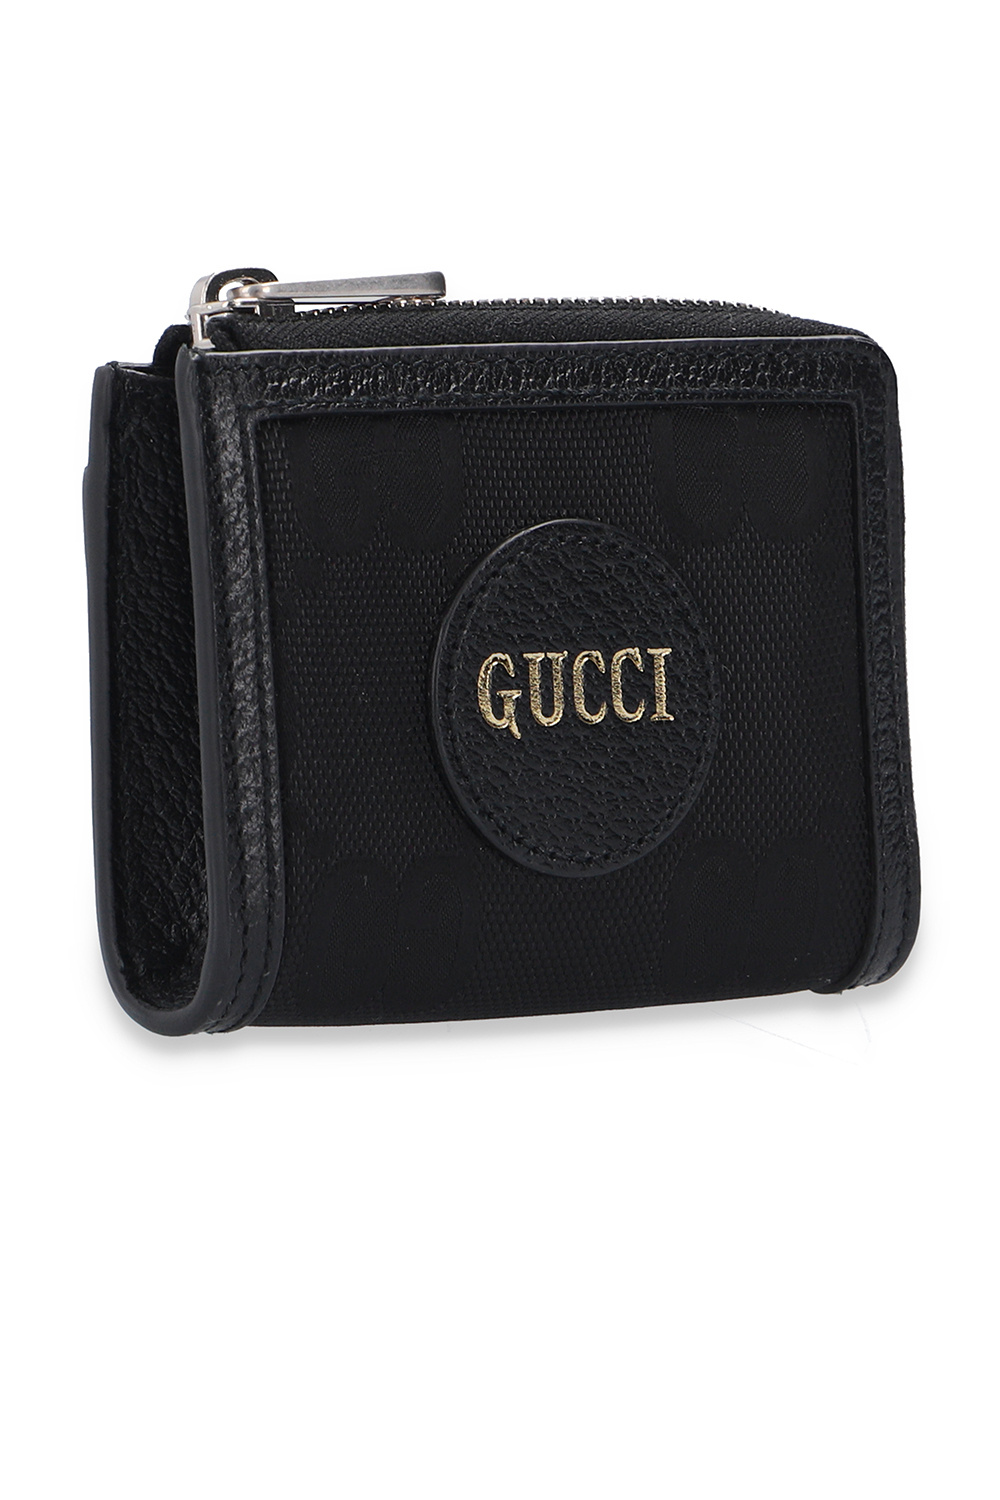 Gucci gucci colour block pumps item